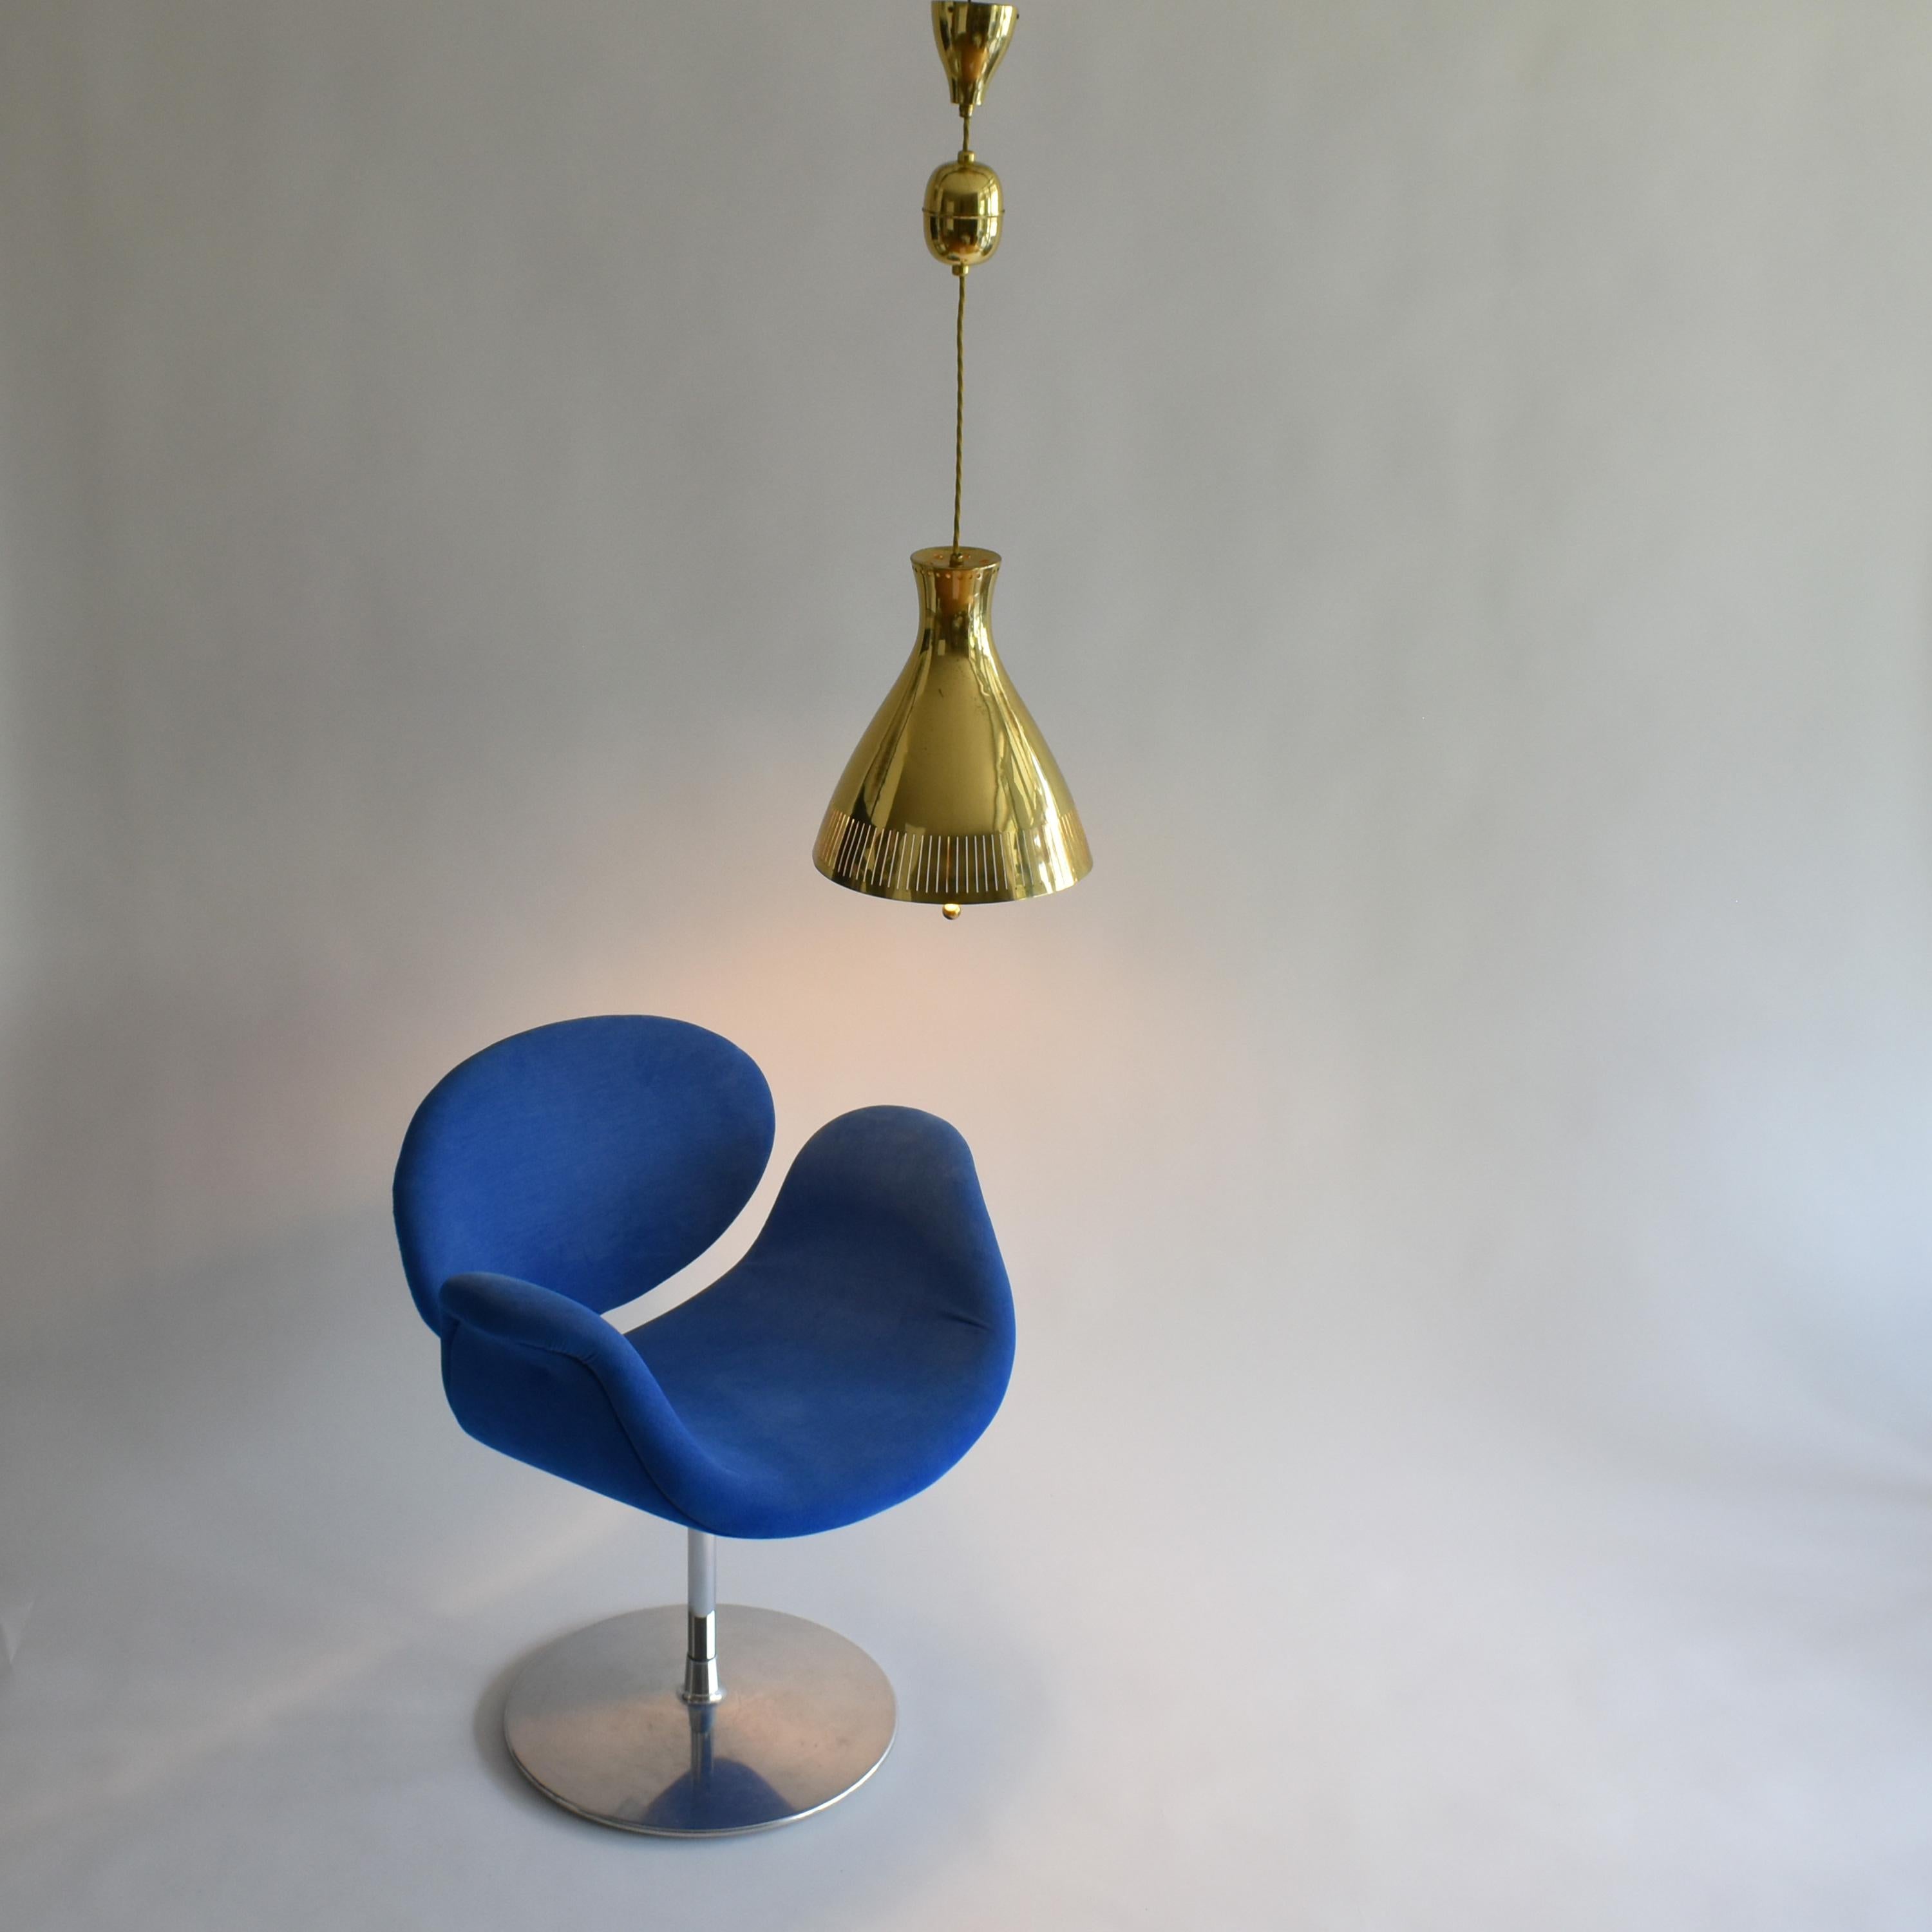 Mid-Century Modern Brass Pendant Lamp by Vereinigte Werkstätten 1960s Germany For Sale 6